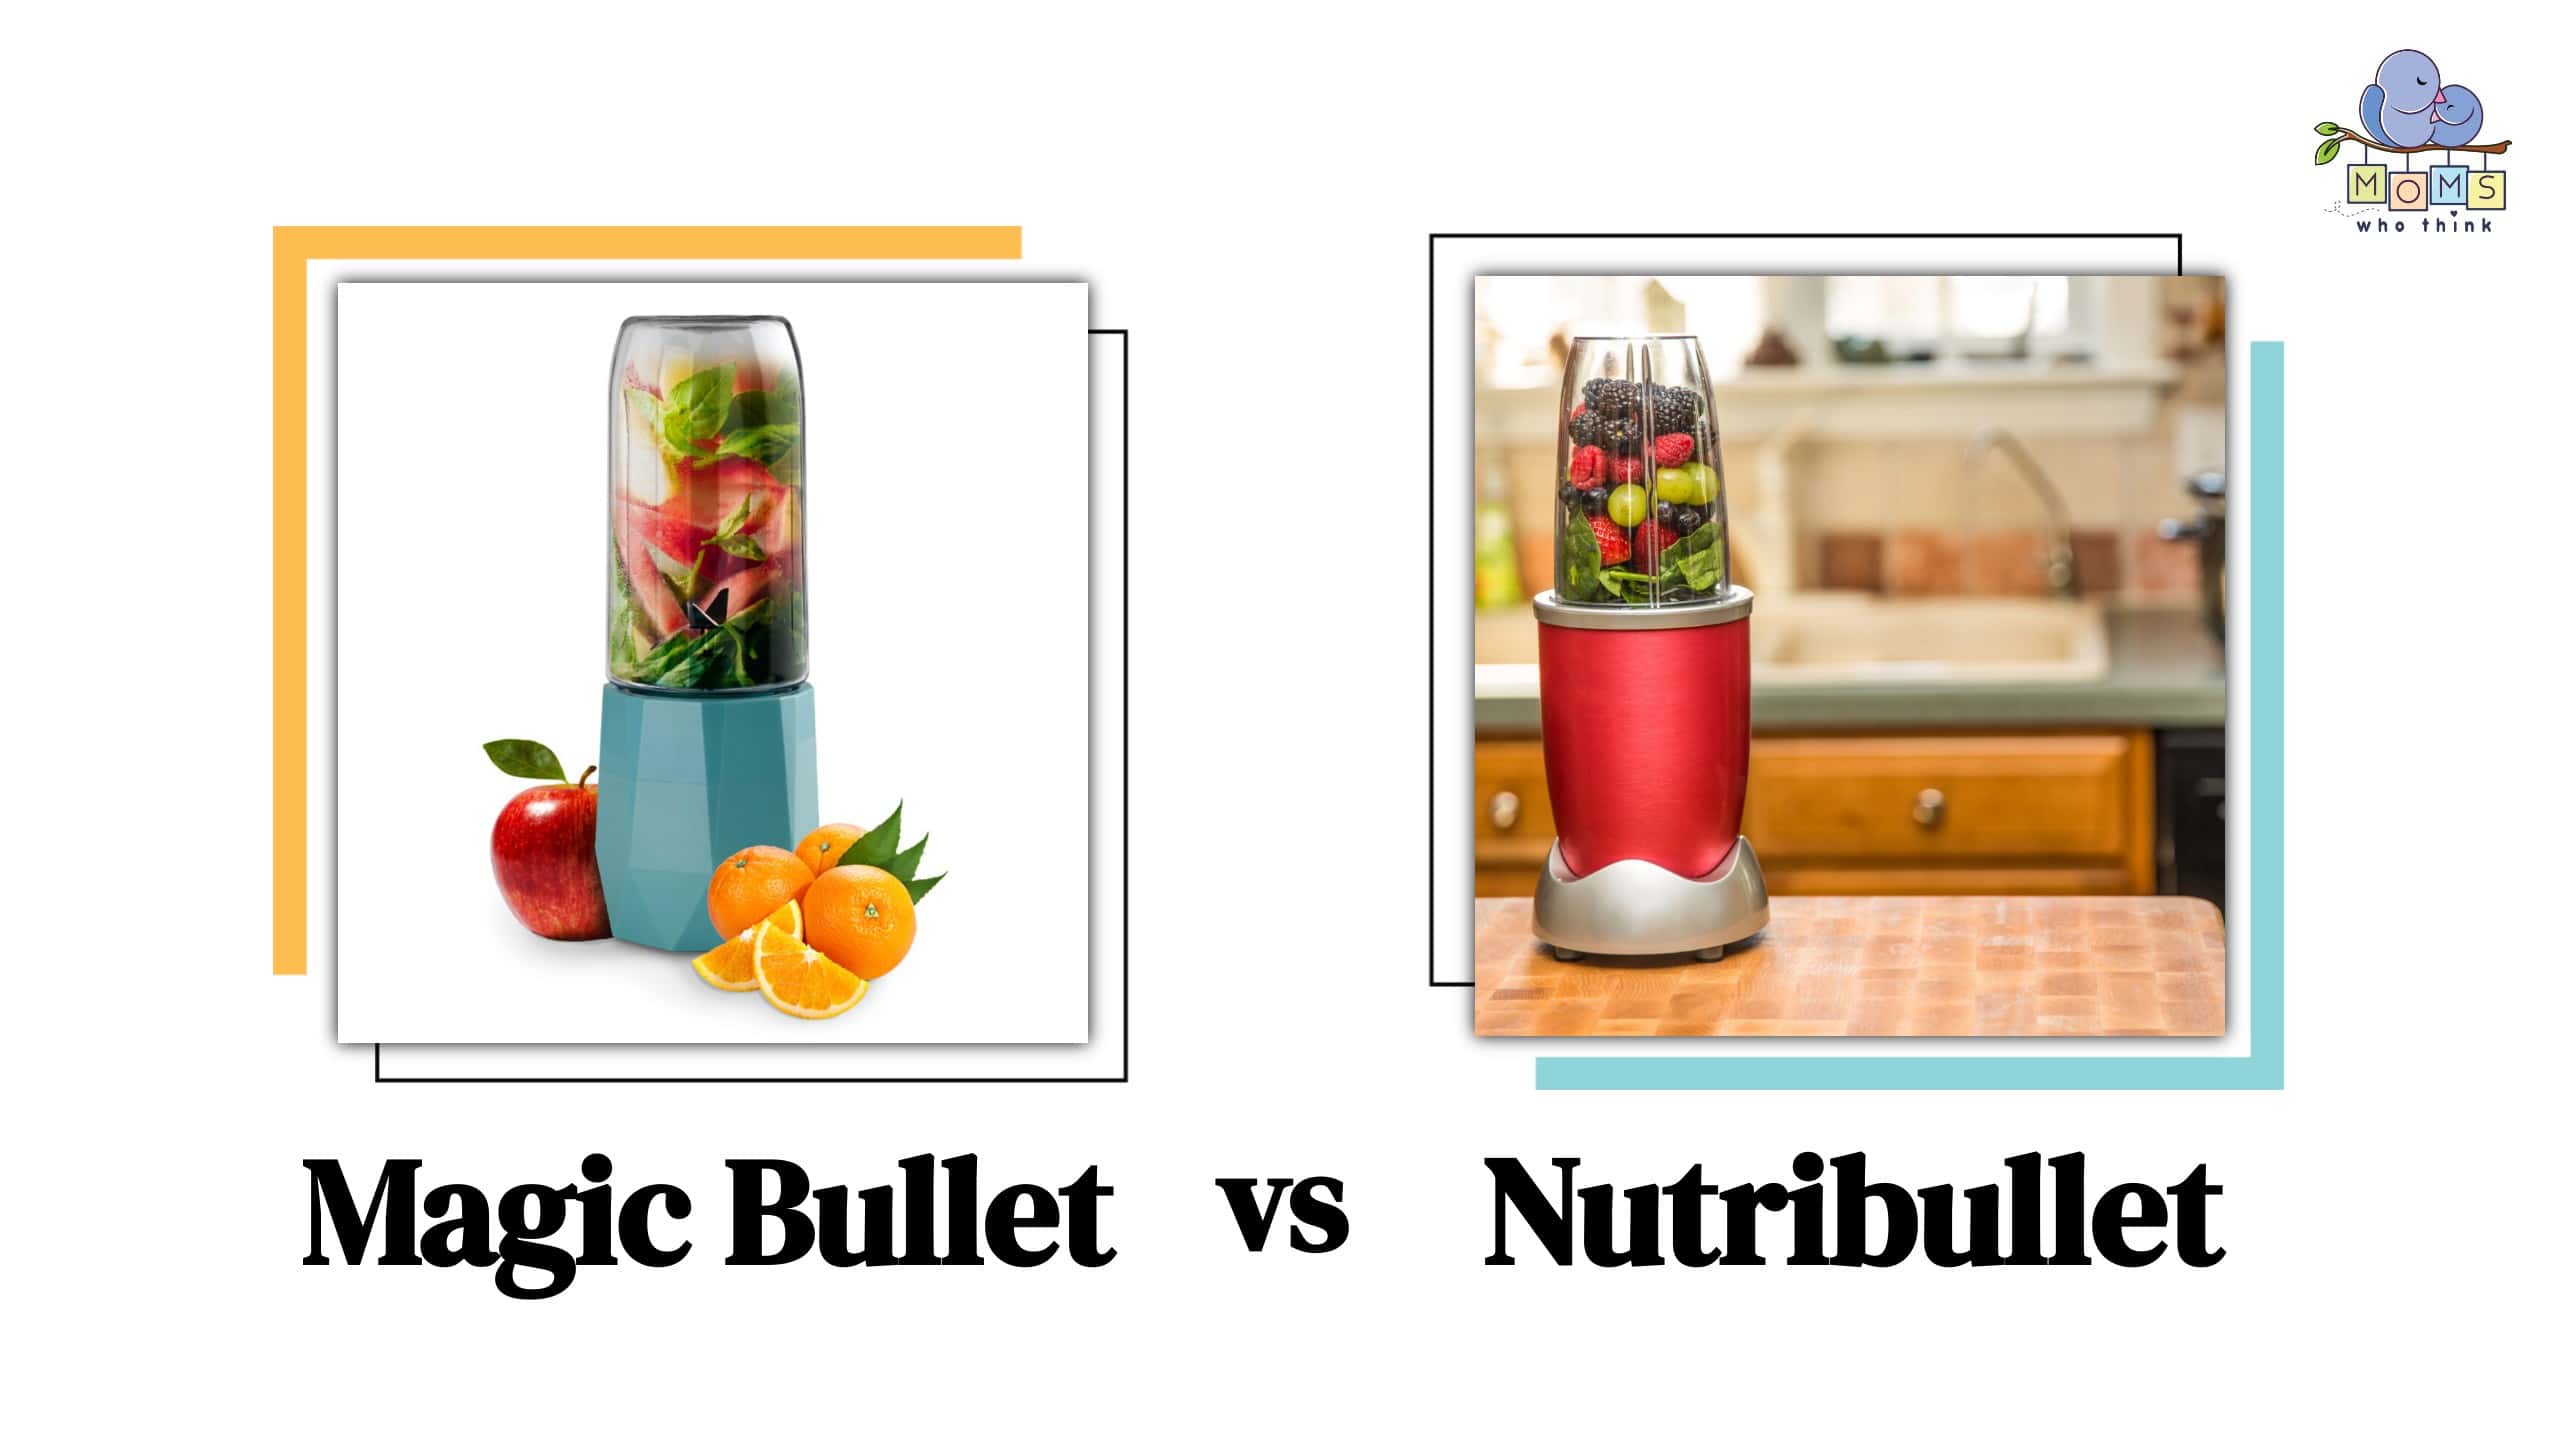 Magic Bullet vs Nutribullet vs Ninja: Which Bullet Is Best?